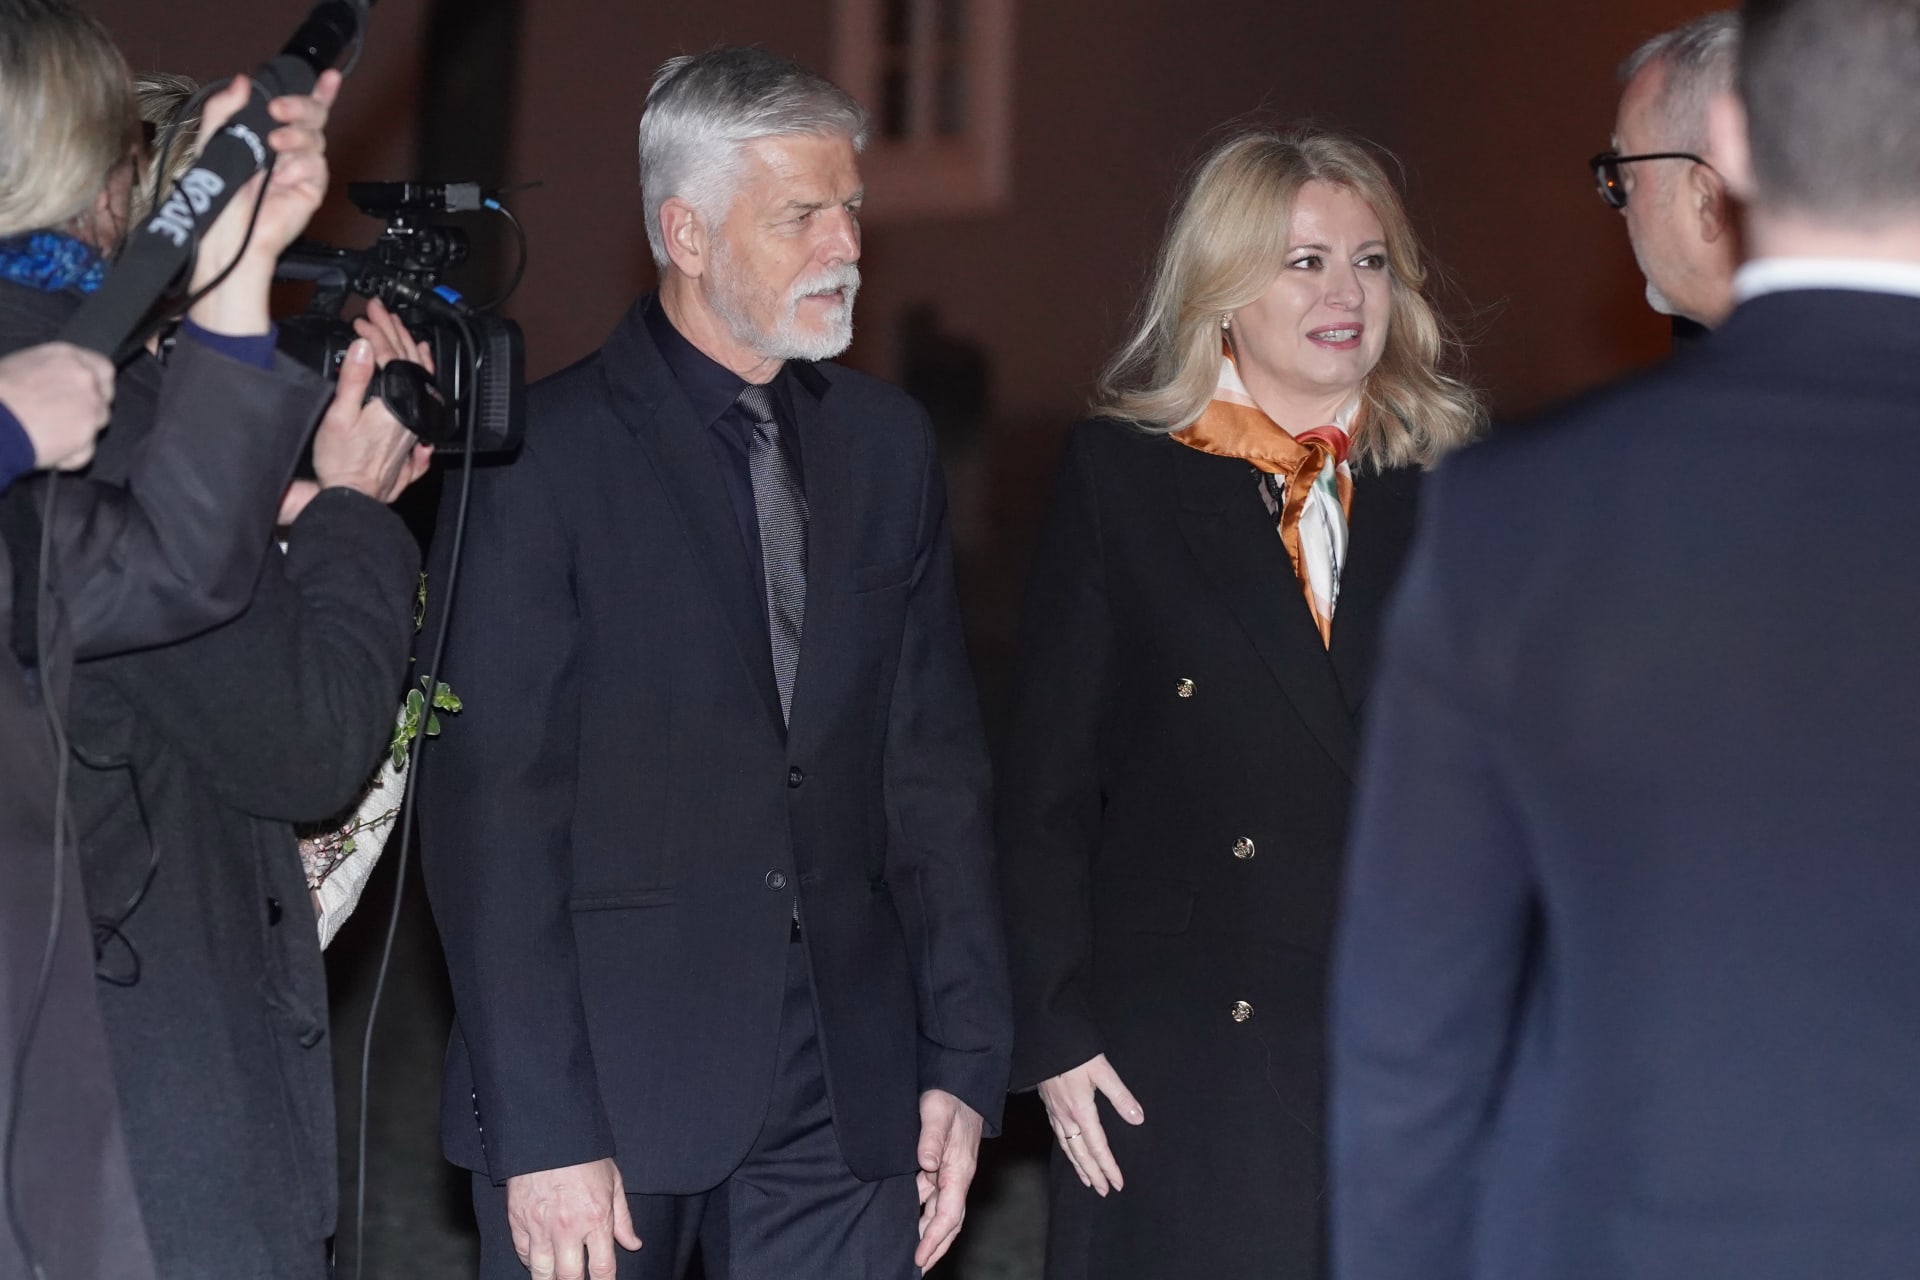 Na promítání filmu dorazila také slovenská prezidentka Zuzana Čaputová.